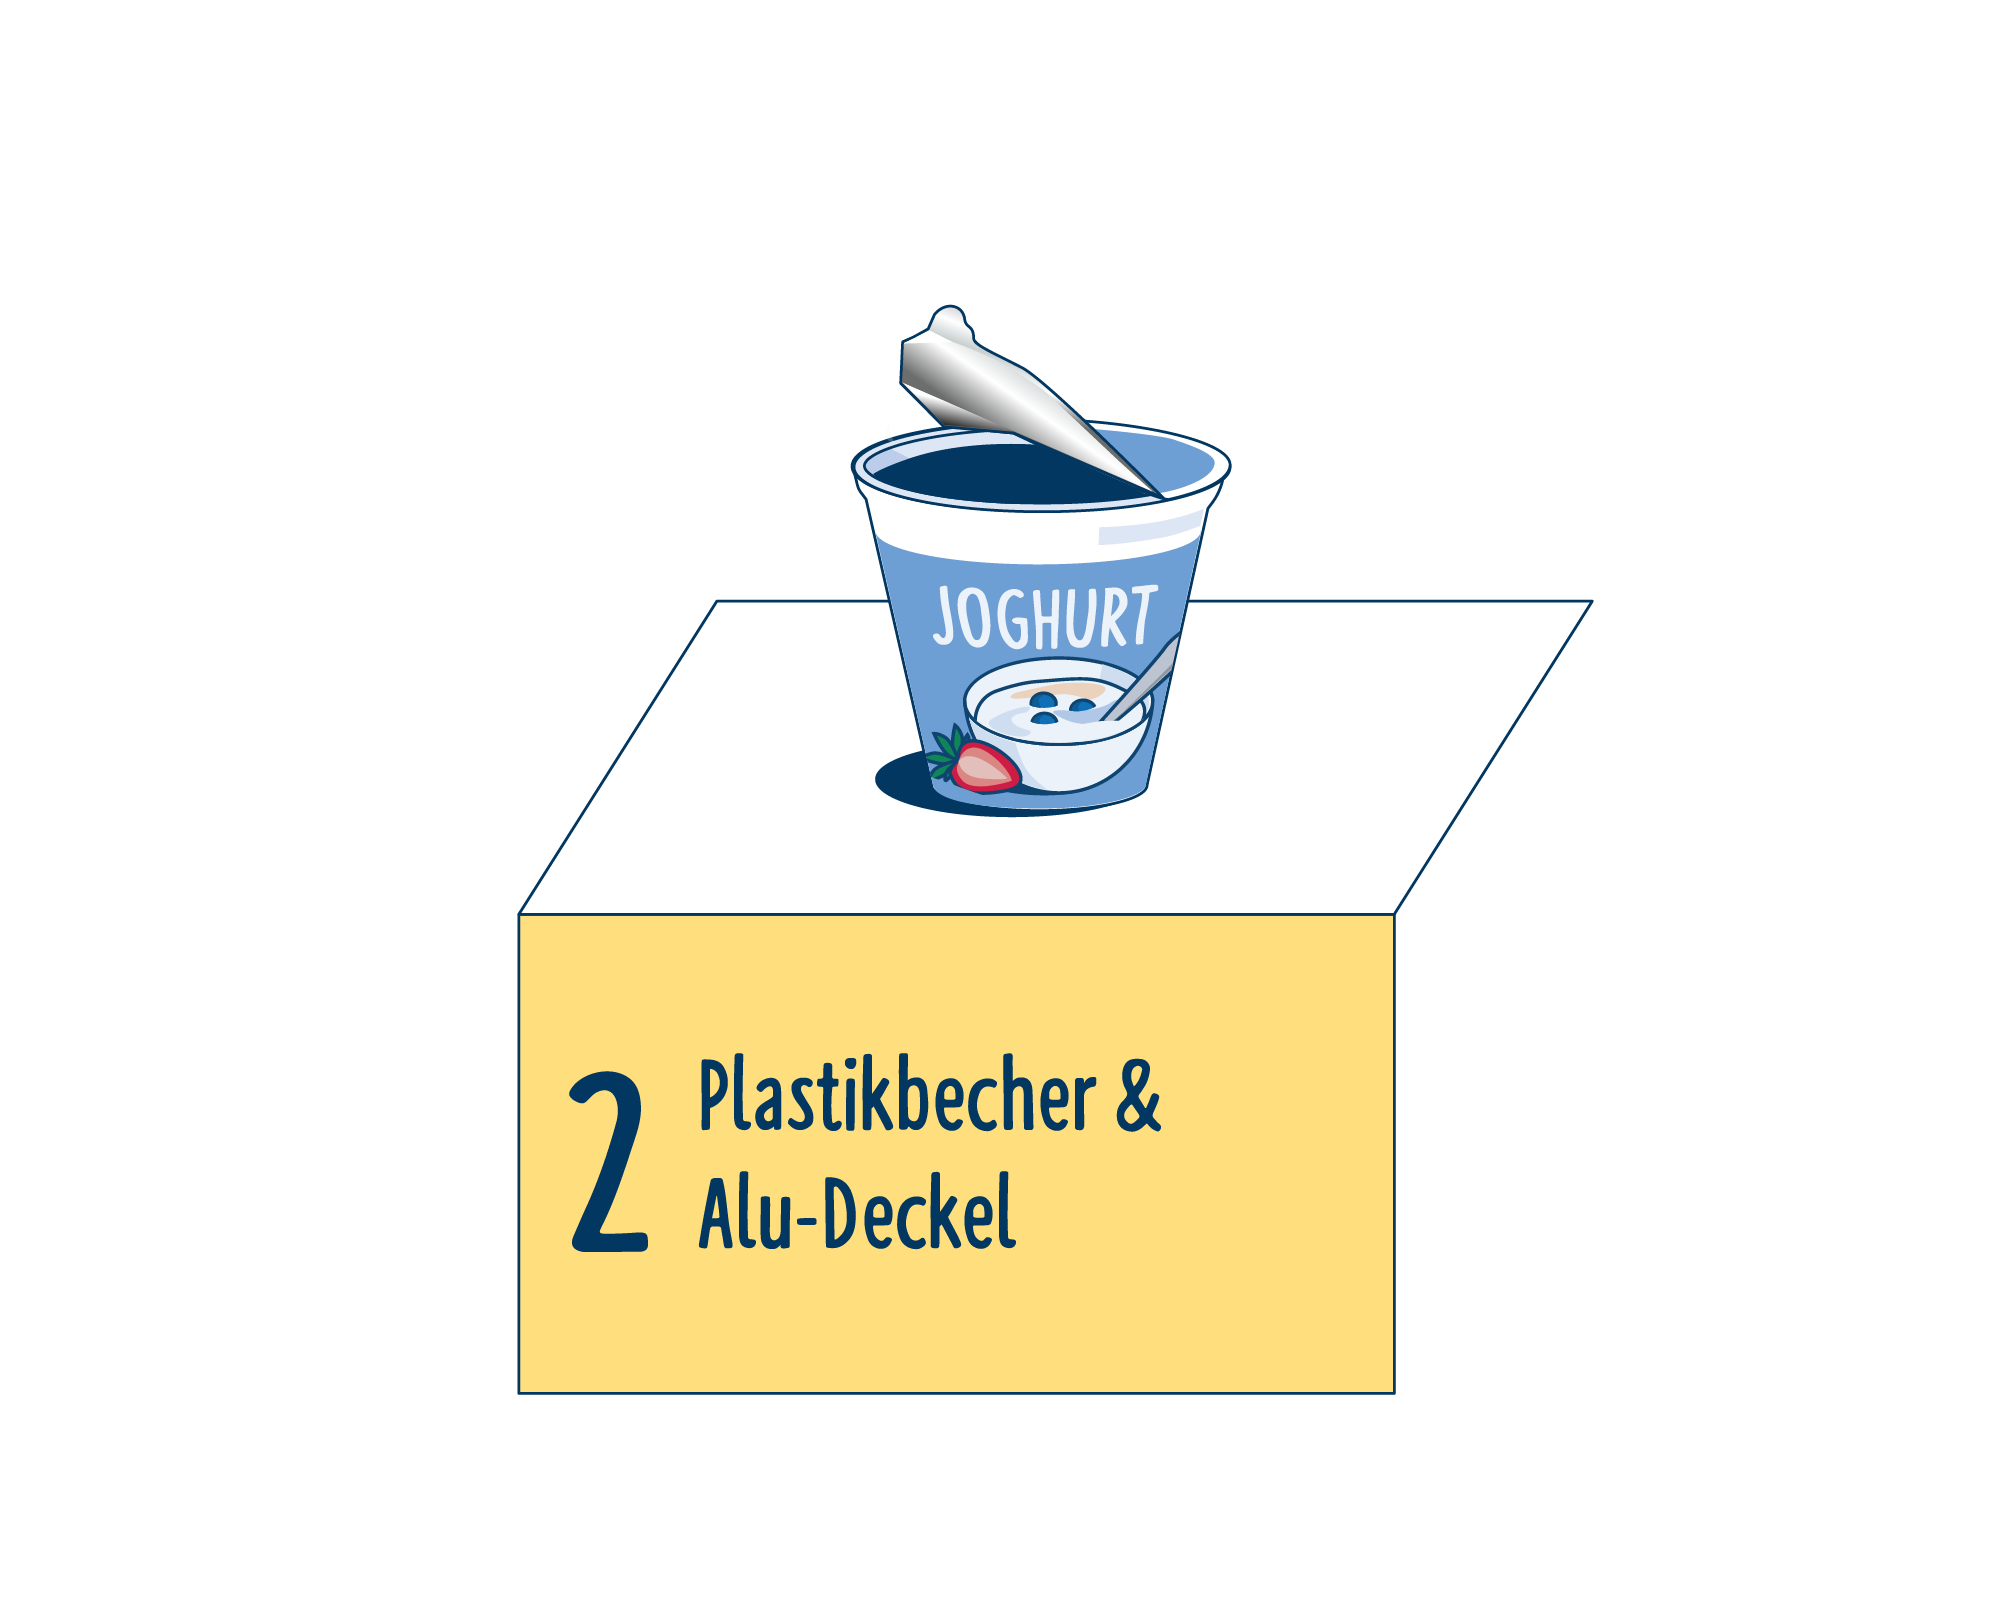 Bild Produktverpackung von Joghurt & Desserts eingeordnet auf Platz 2, bestehend aus Plastikbecher & Alu-Deckel.